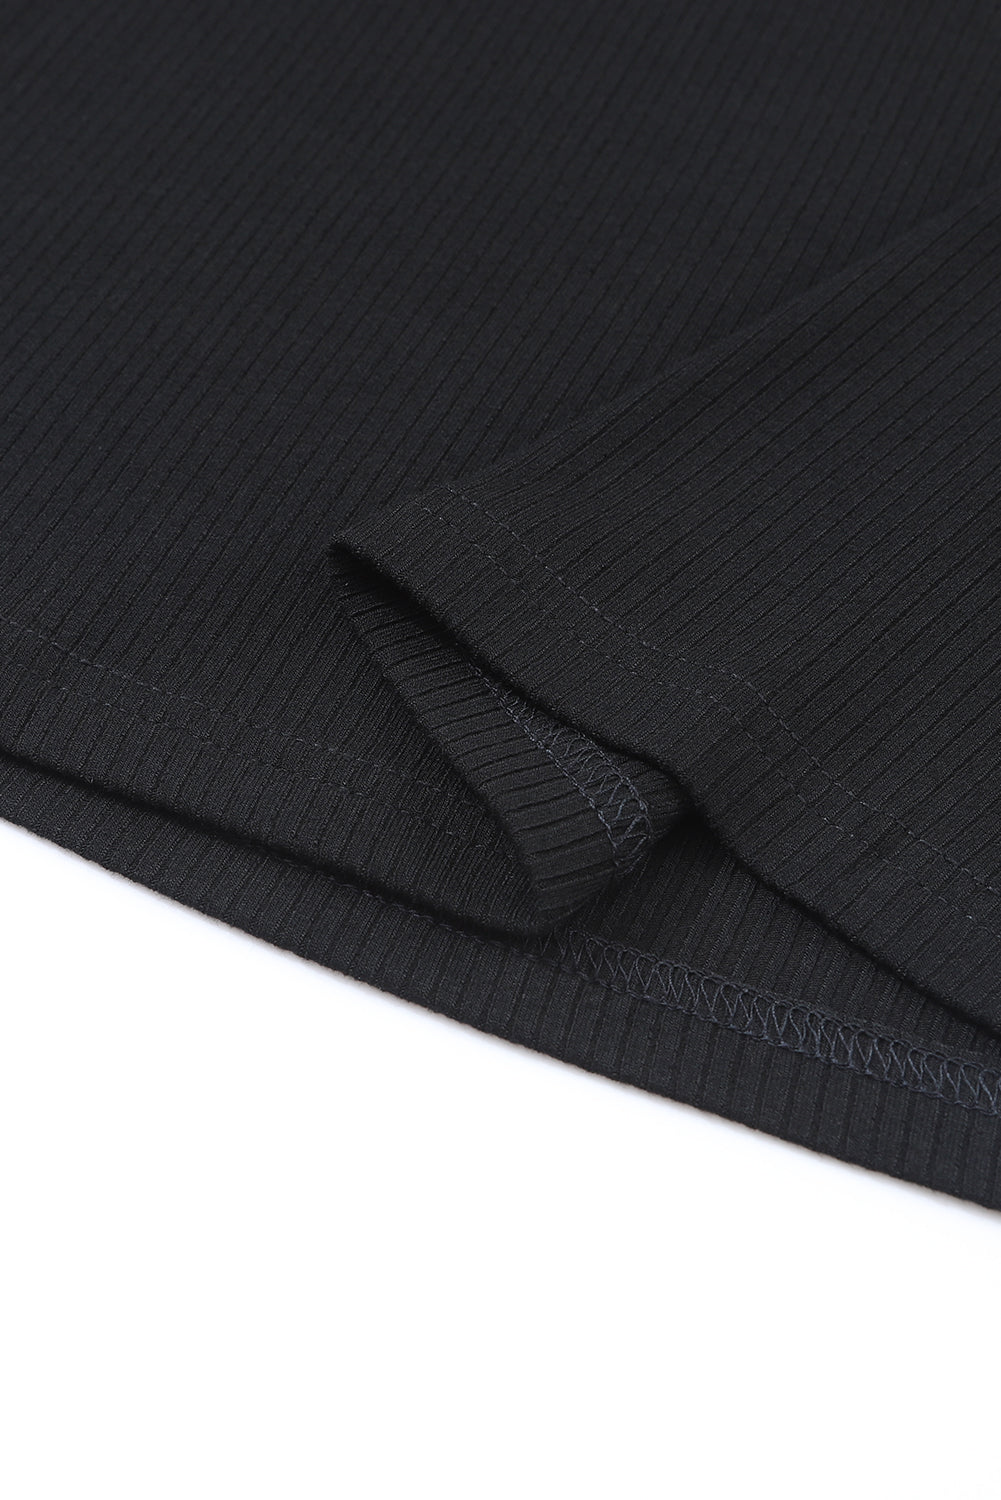 Haut noir à manches longues et col montant en tricot côtelé